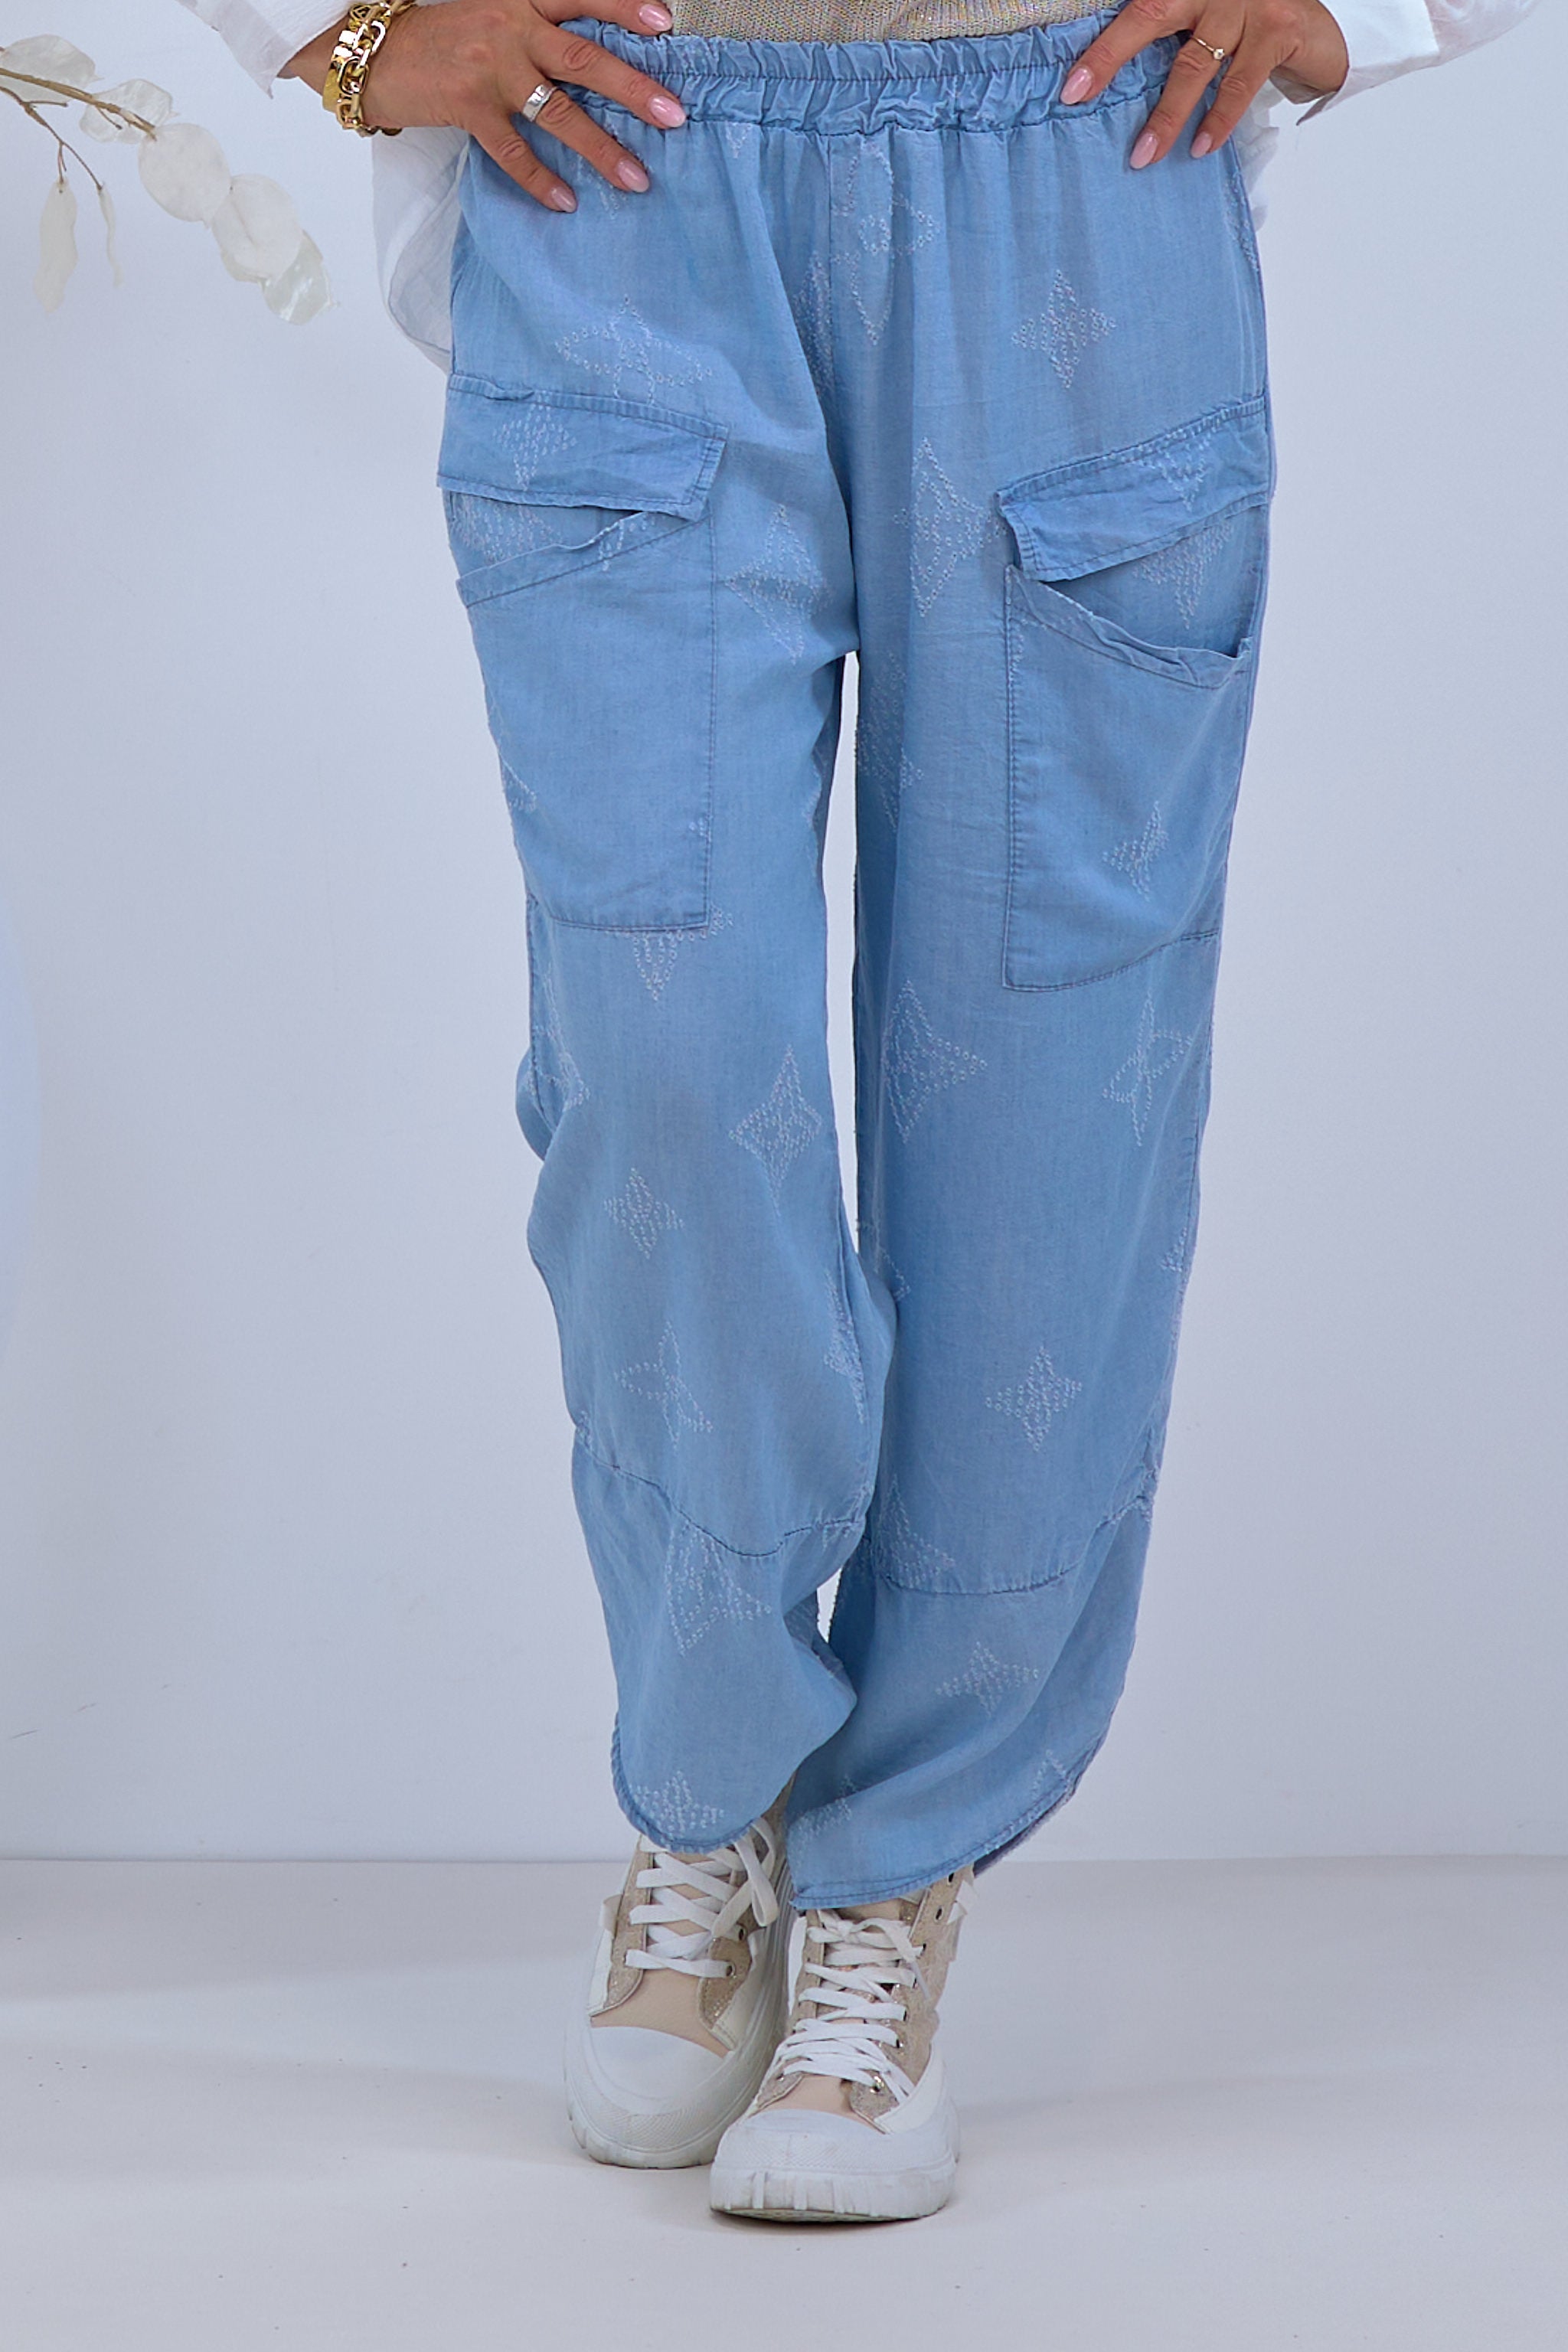 Damen lockere Hose mit Muster in blau von Trends & Lifestyle Deutschland GmbH